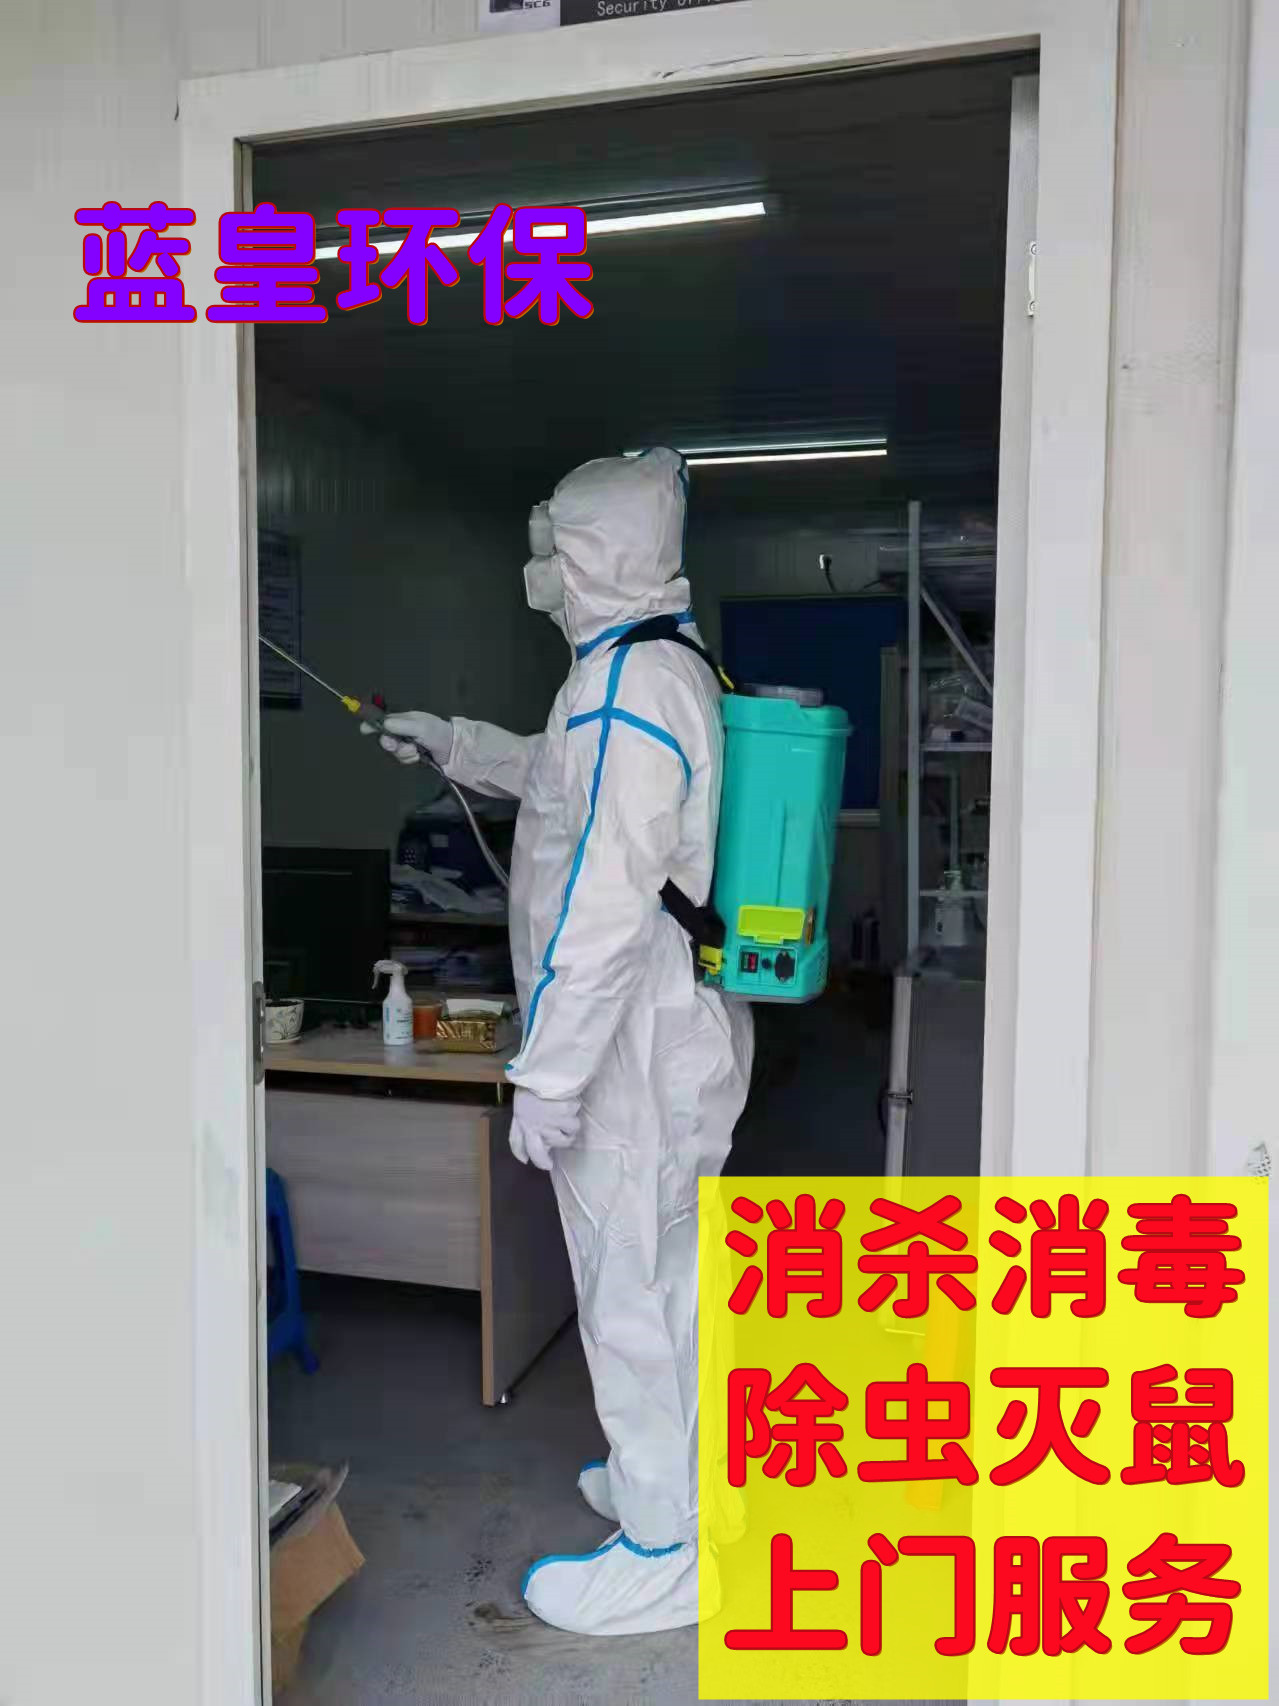 上海 工厂防疫消杀 除跳蚤灭蚊蝇 上门抓老鼠